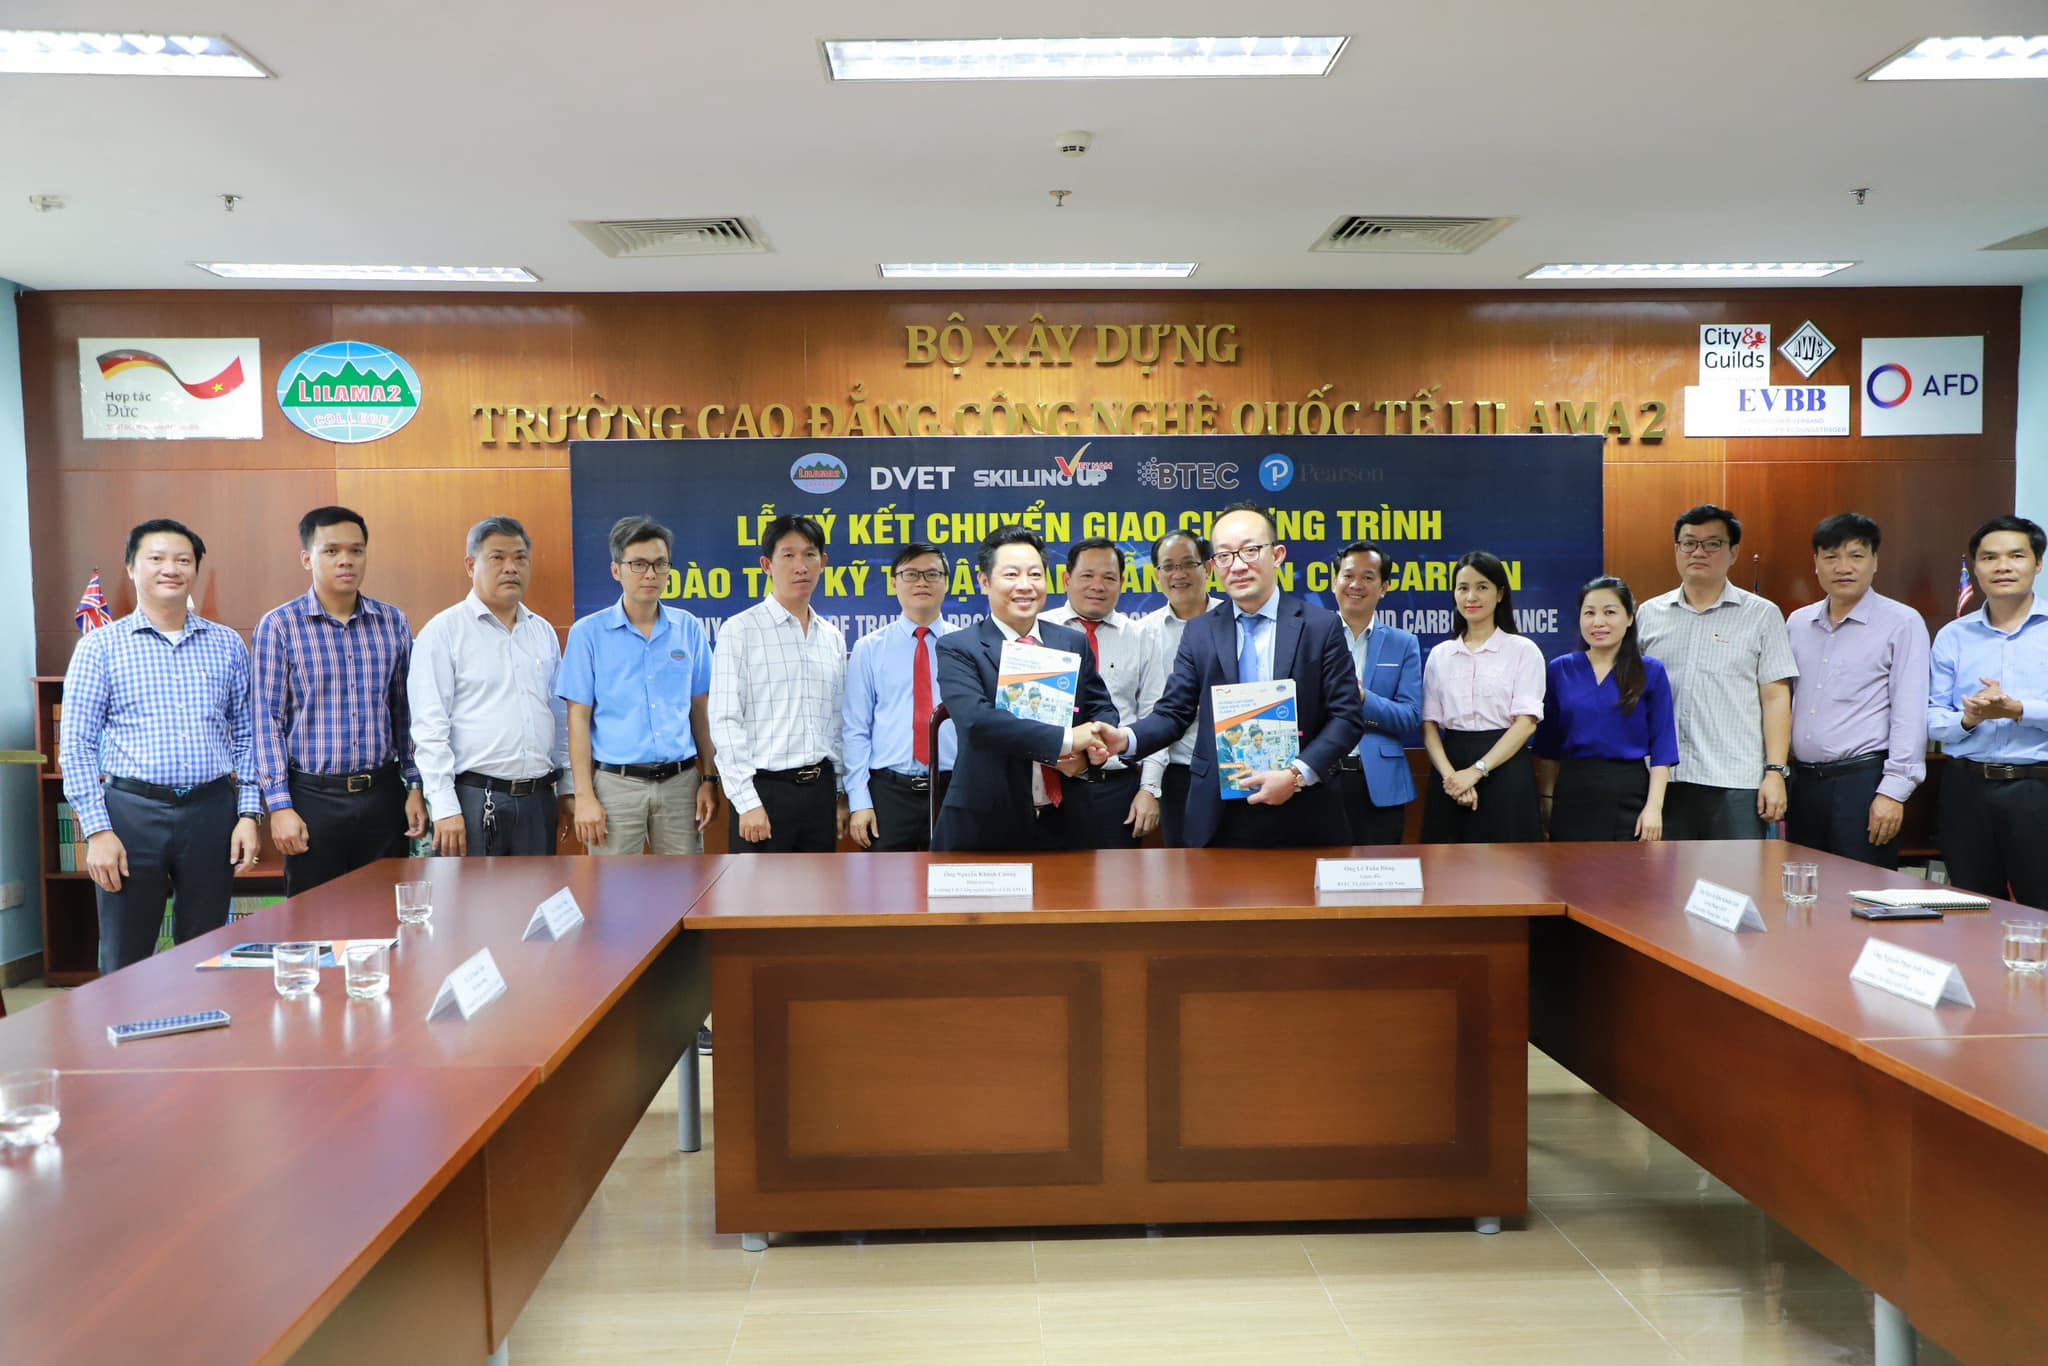 Lilama 2 - Cơ sở giáo dục đầu tiên ở Việt Nam đào tạo tín chỉ carbon